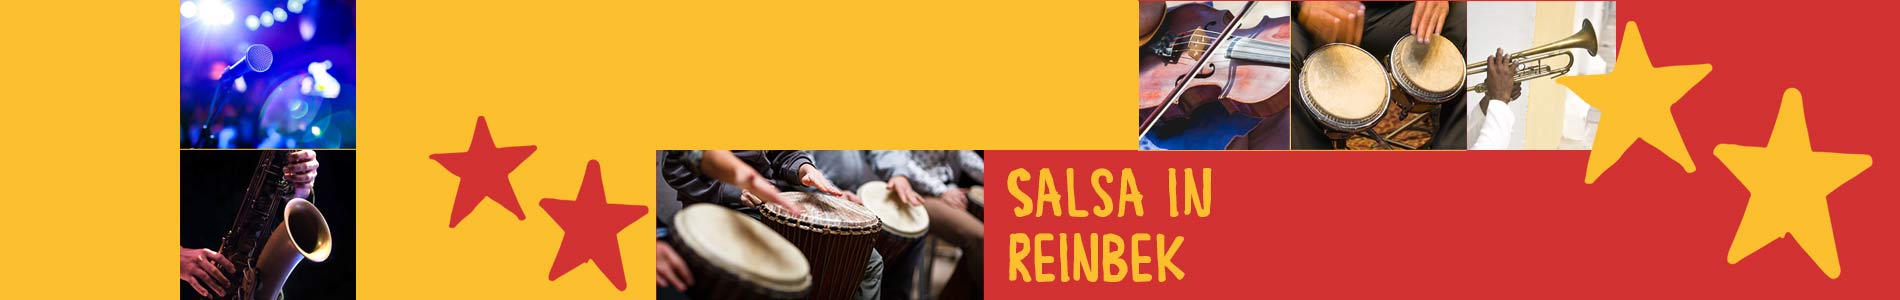 Salsa in Reinbek – Salsa lernen und tanzen, Tanzkurse, Partys, Veranstaltungen